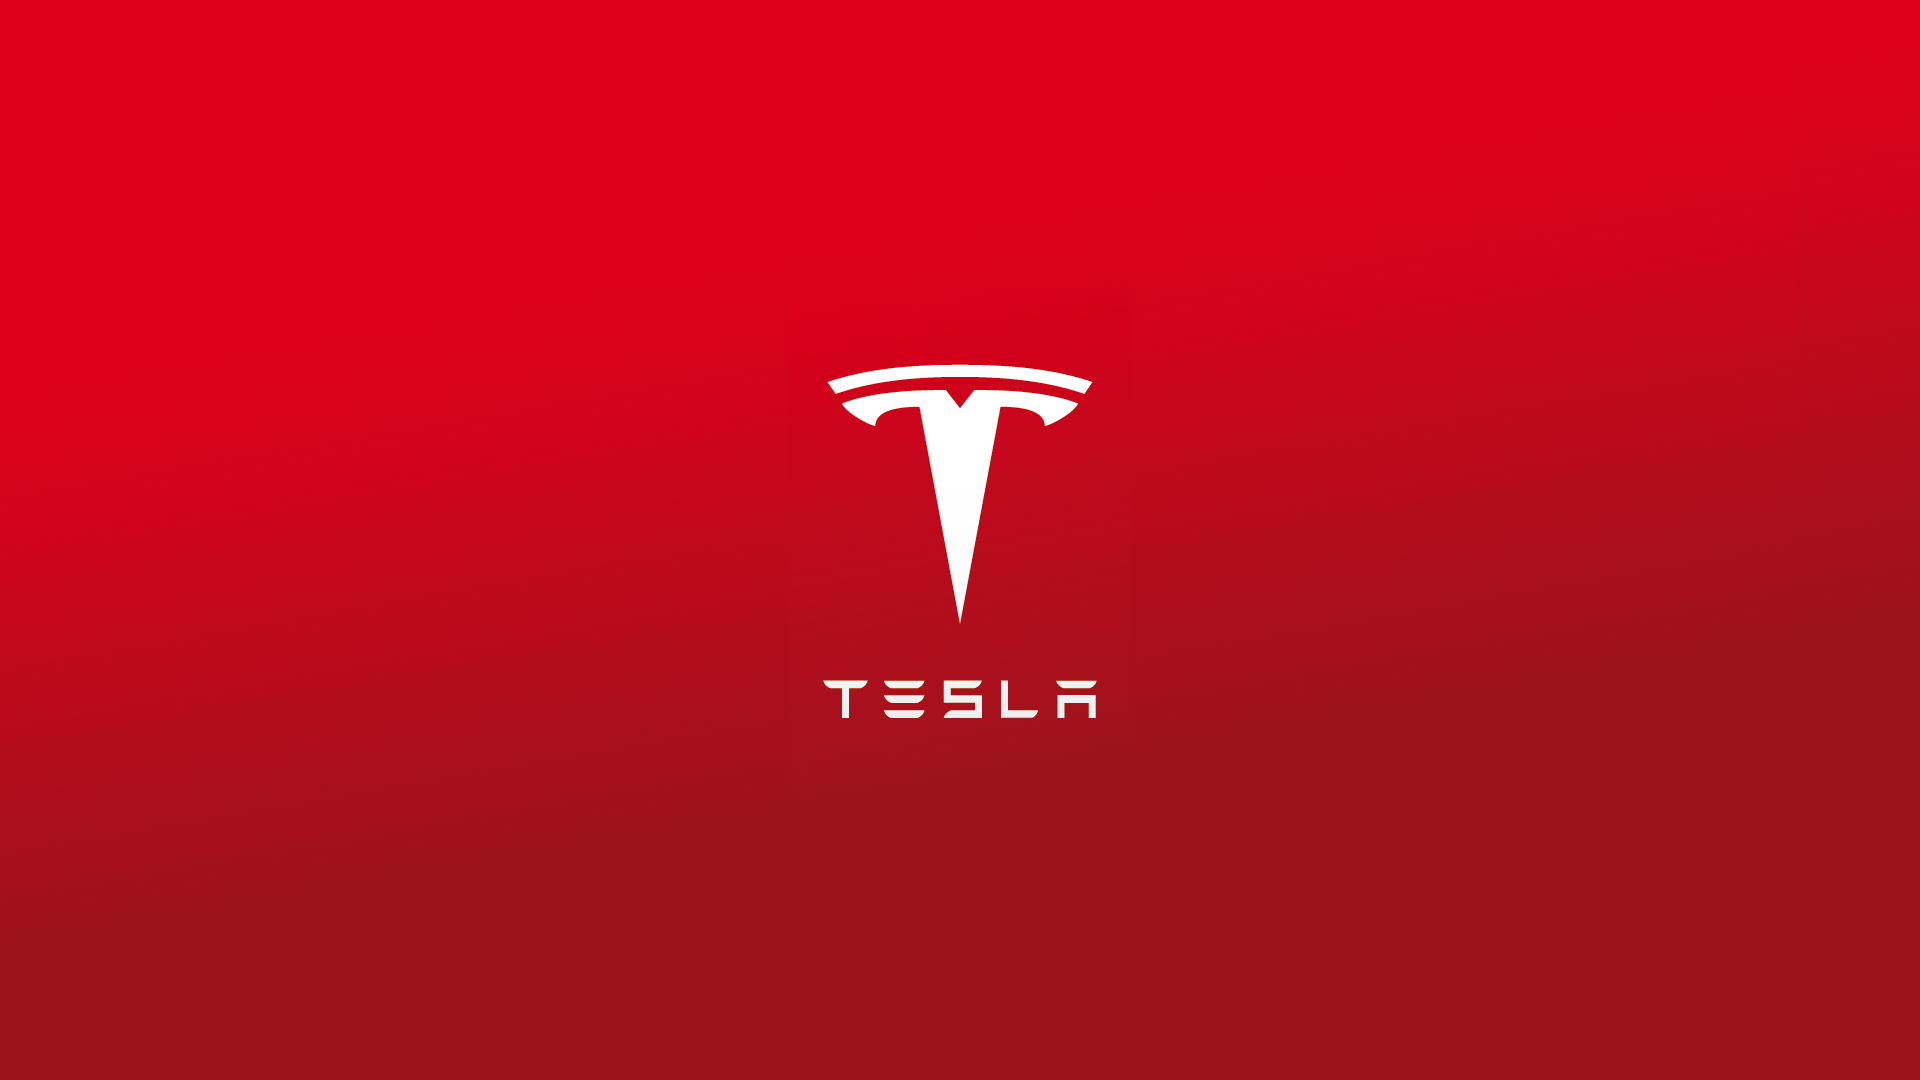 Tesla Motors by Lord Iluvatar on